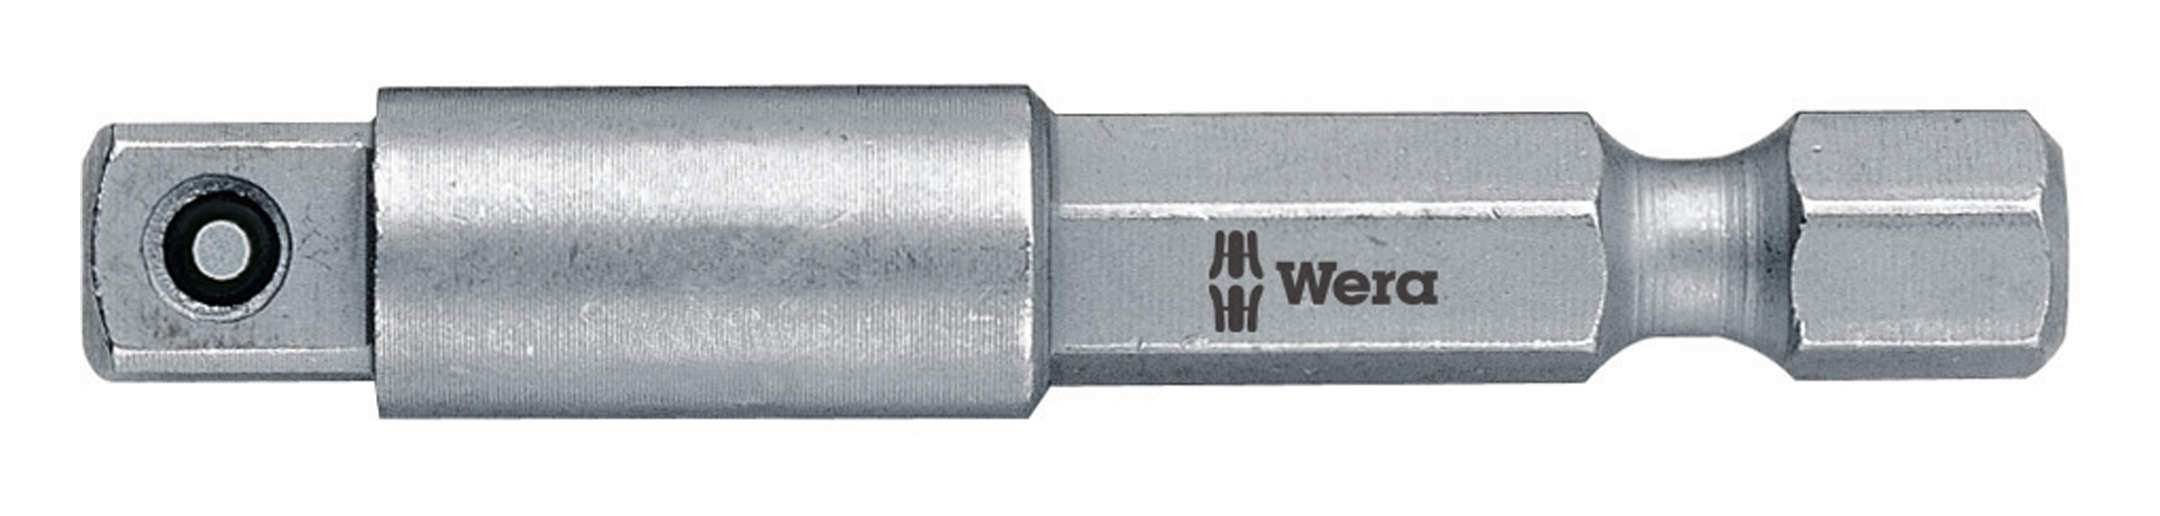 Einsatz Wera Adapter 1/4" für Steckschlüssel, 1/4" 50 mm